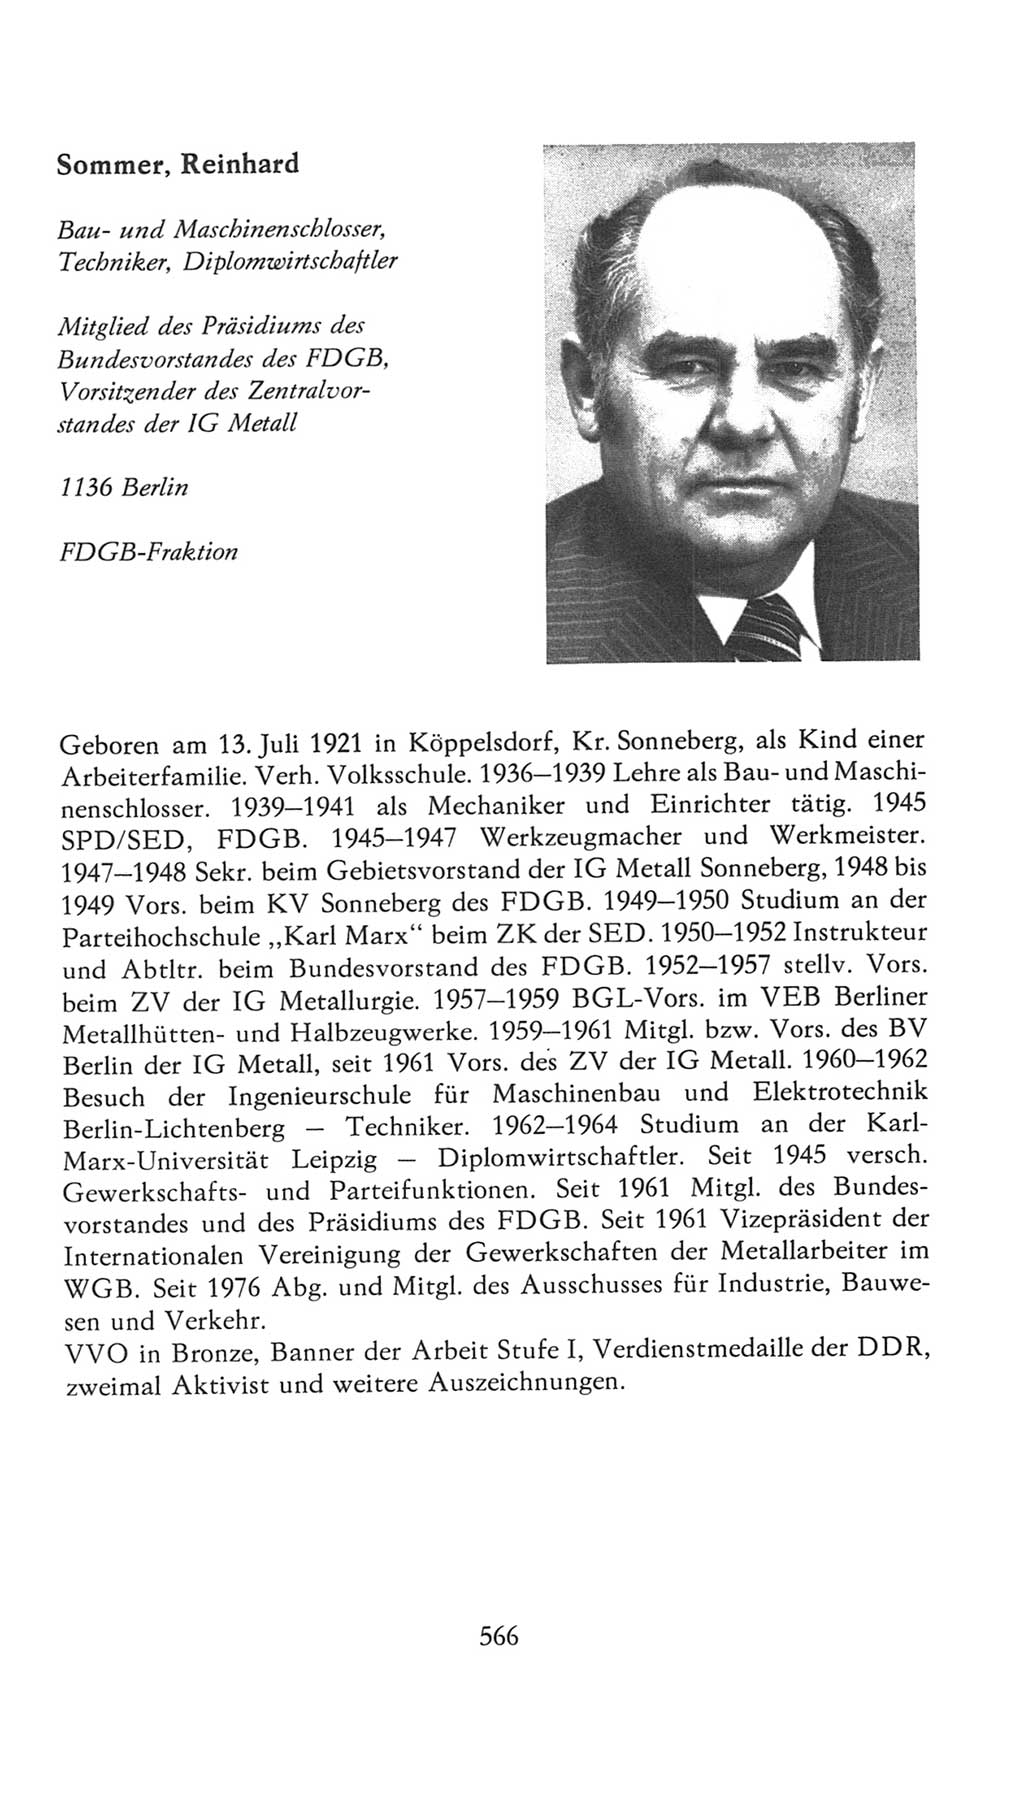 Volkskammer (VK) der Deutschen Demokratischen Republik (DDR), 7. Wahlperiode 1976-1981, Seite 566 (VK. DDR 7. WP. 1976-1981, S. 566)